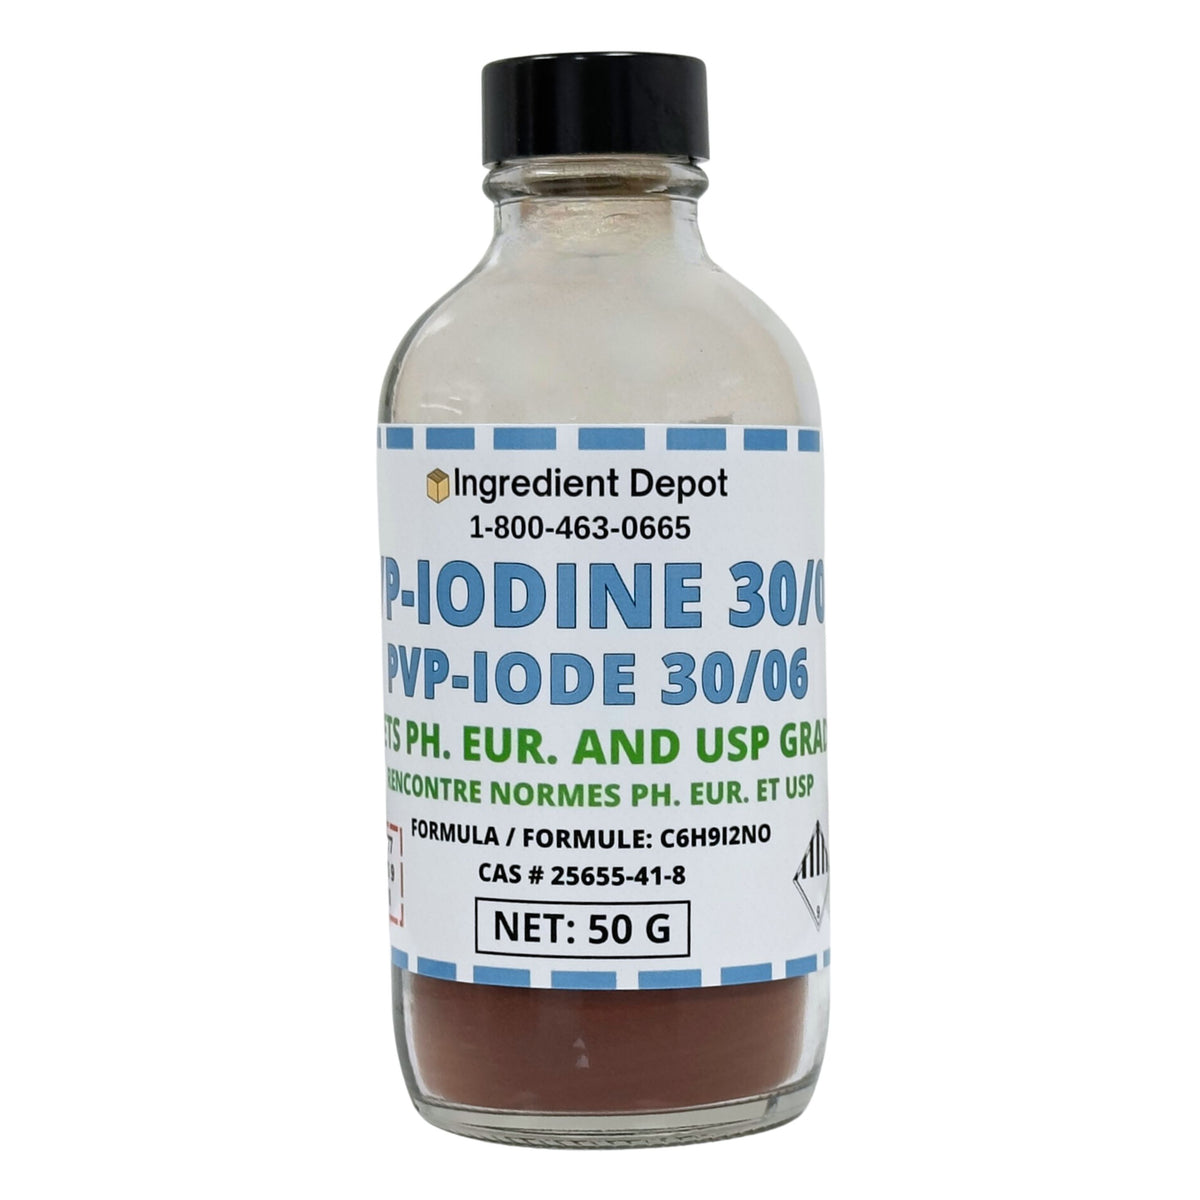 PVP-Iodine 30/06 (PVP-I, Povidone-Iodine) 50g